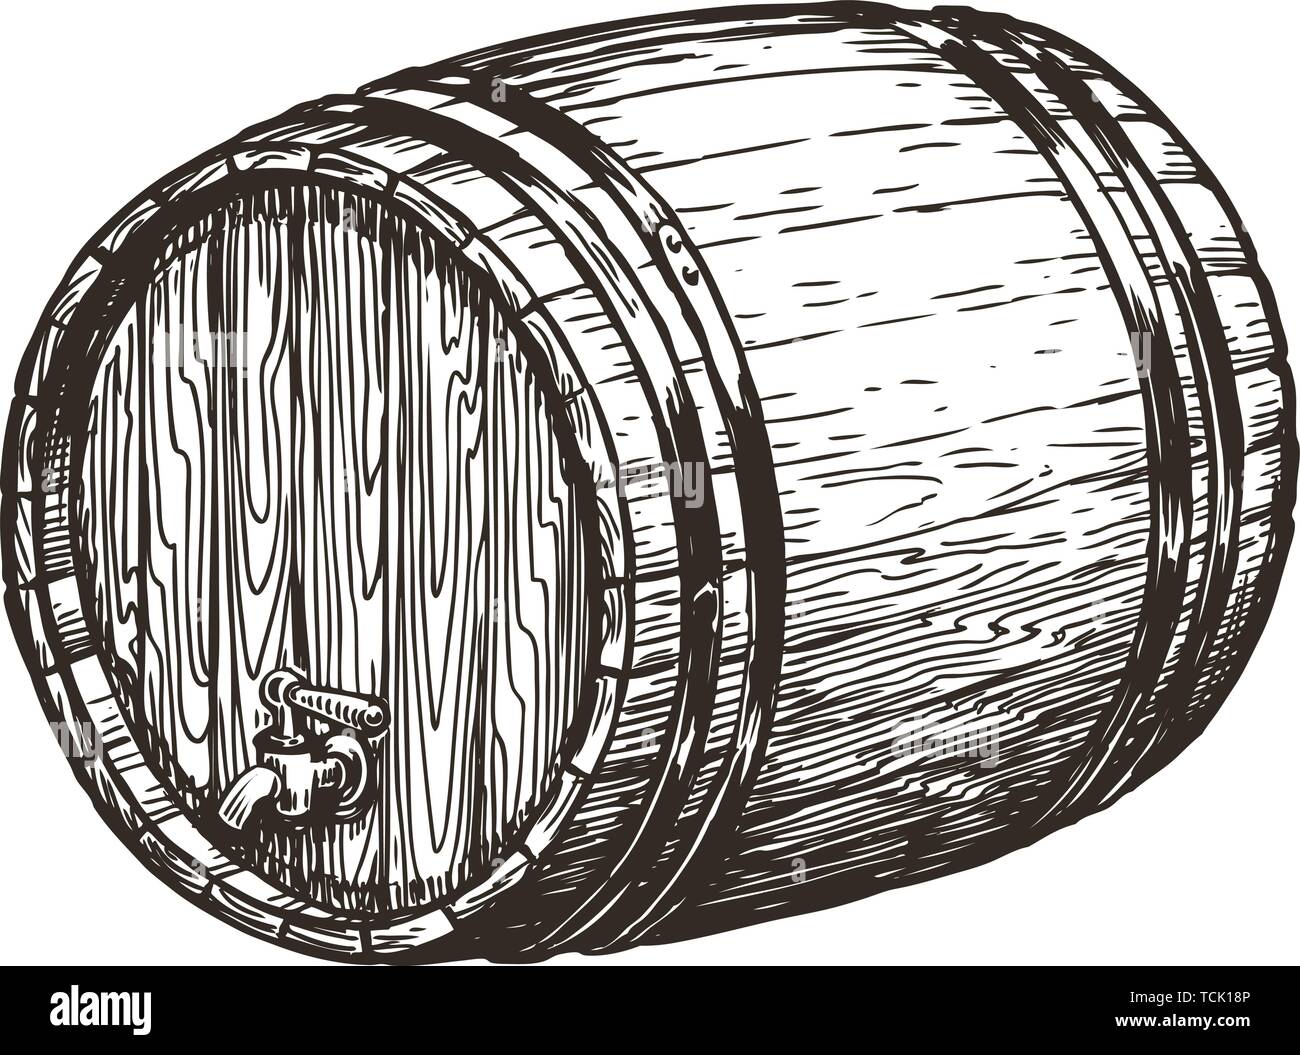 Hand drawn wooden oak barrel. Wine, whisky, beer sketch. Vintage vector illustration Stock Vector